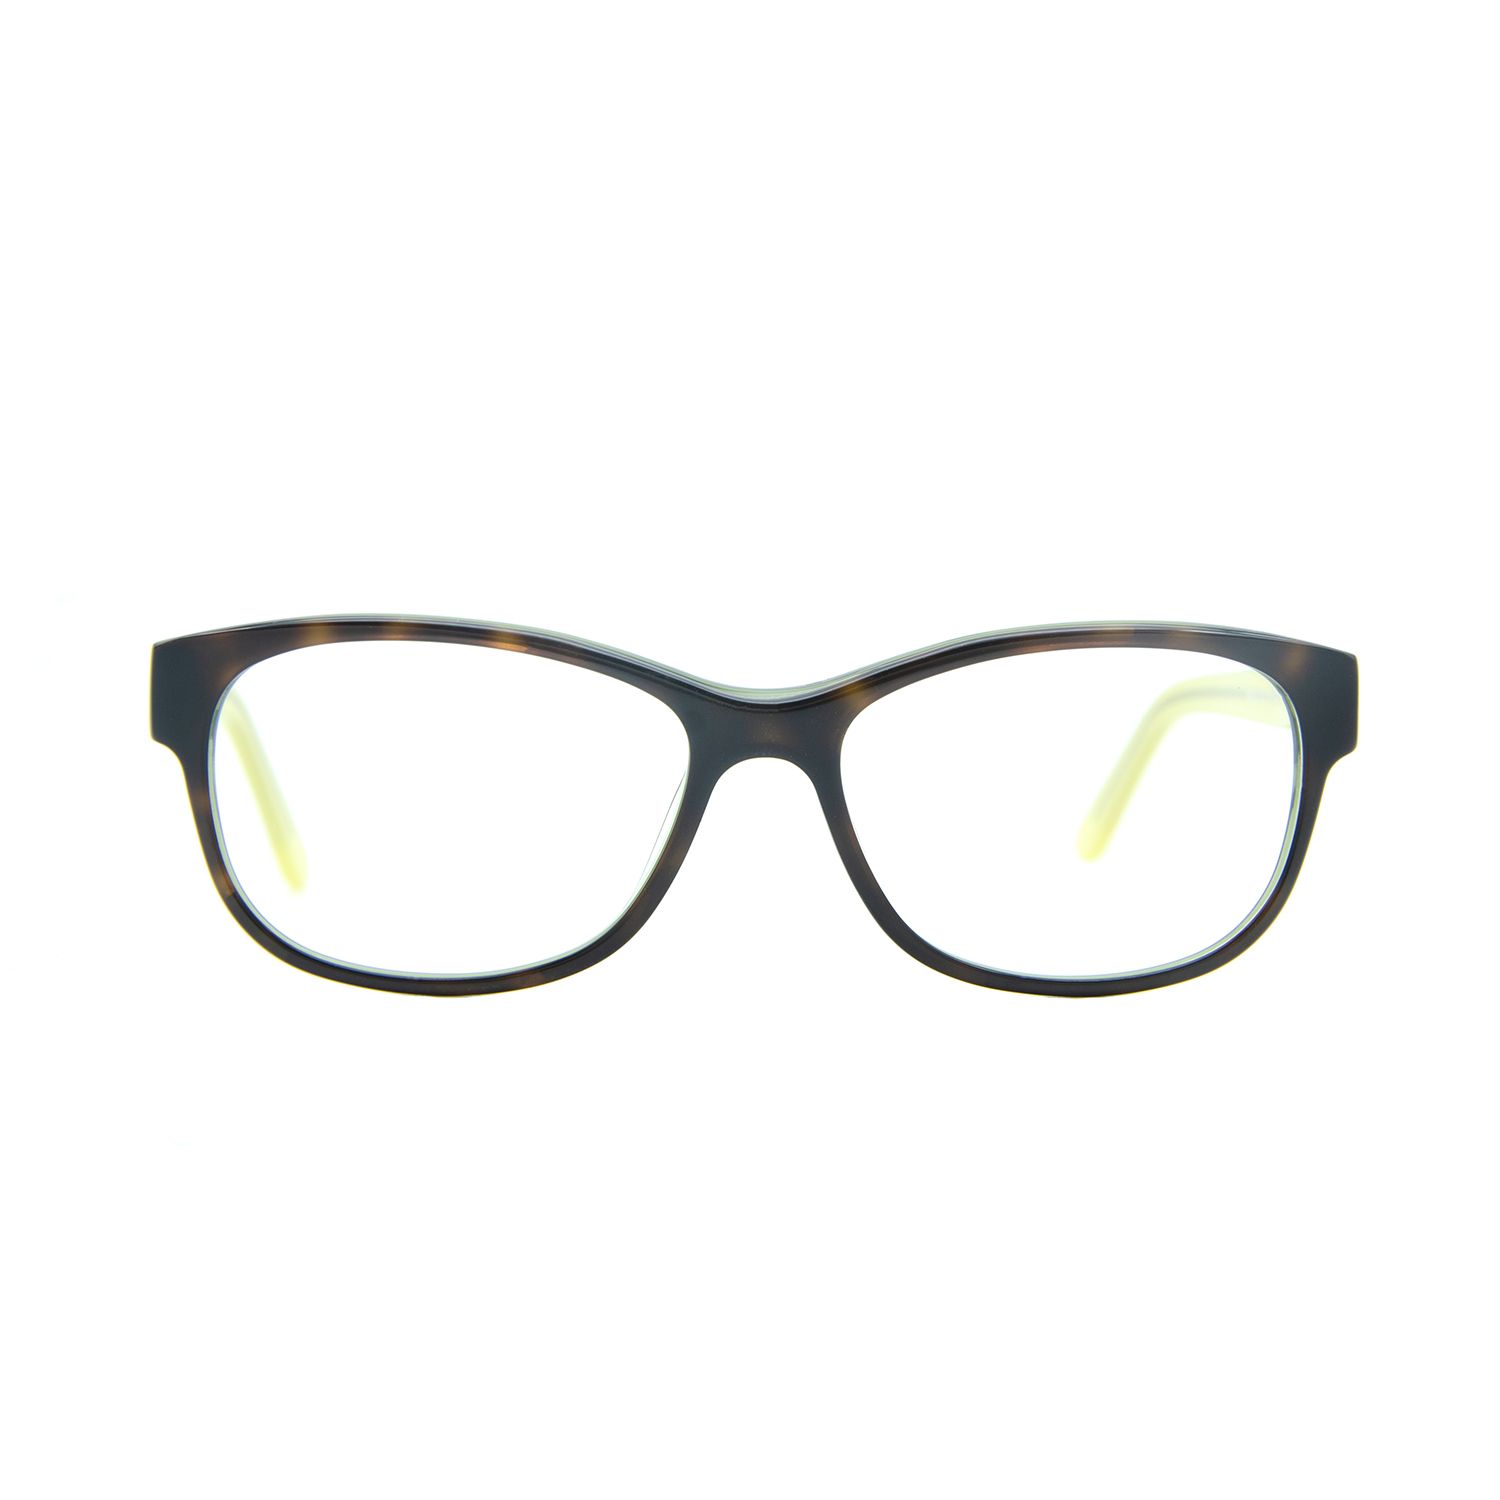 فریم عینک طبی ام اند او مدل Uma-c1 -  - 1